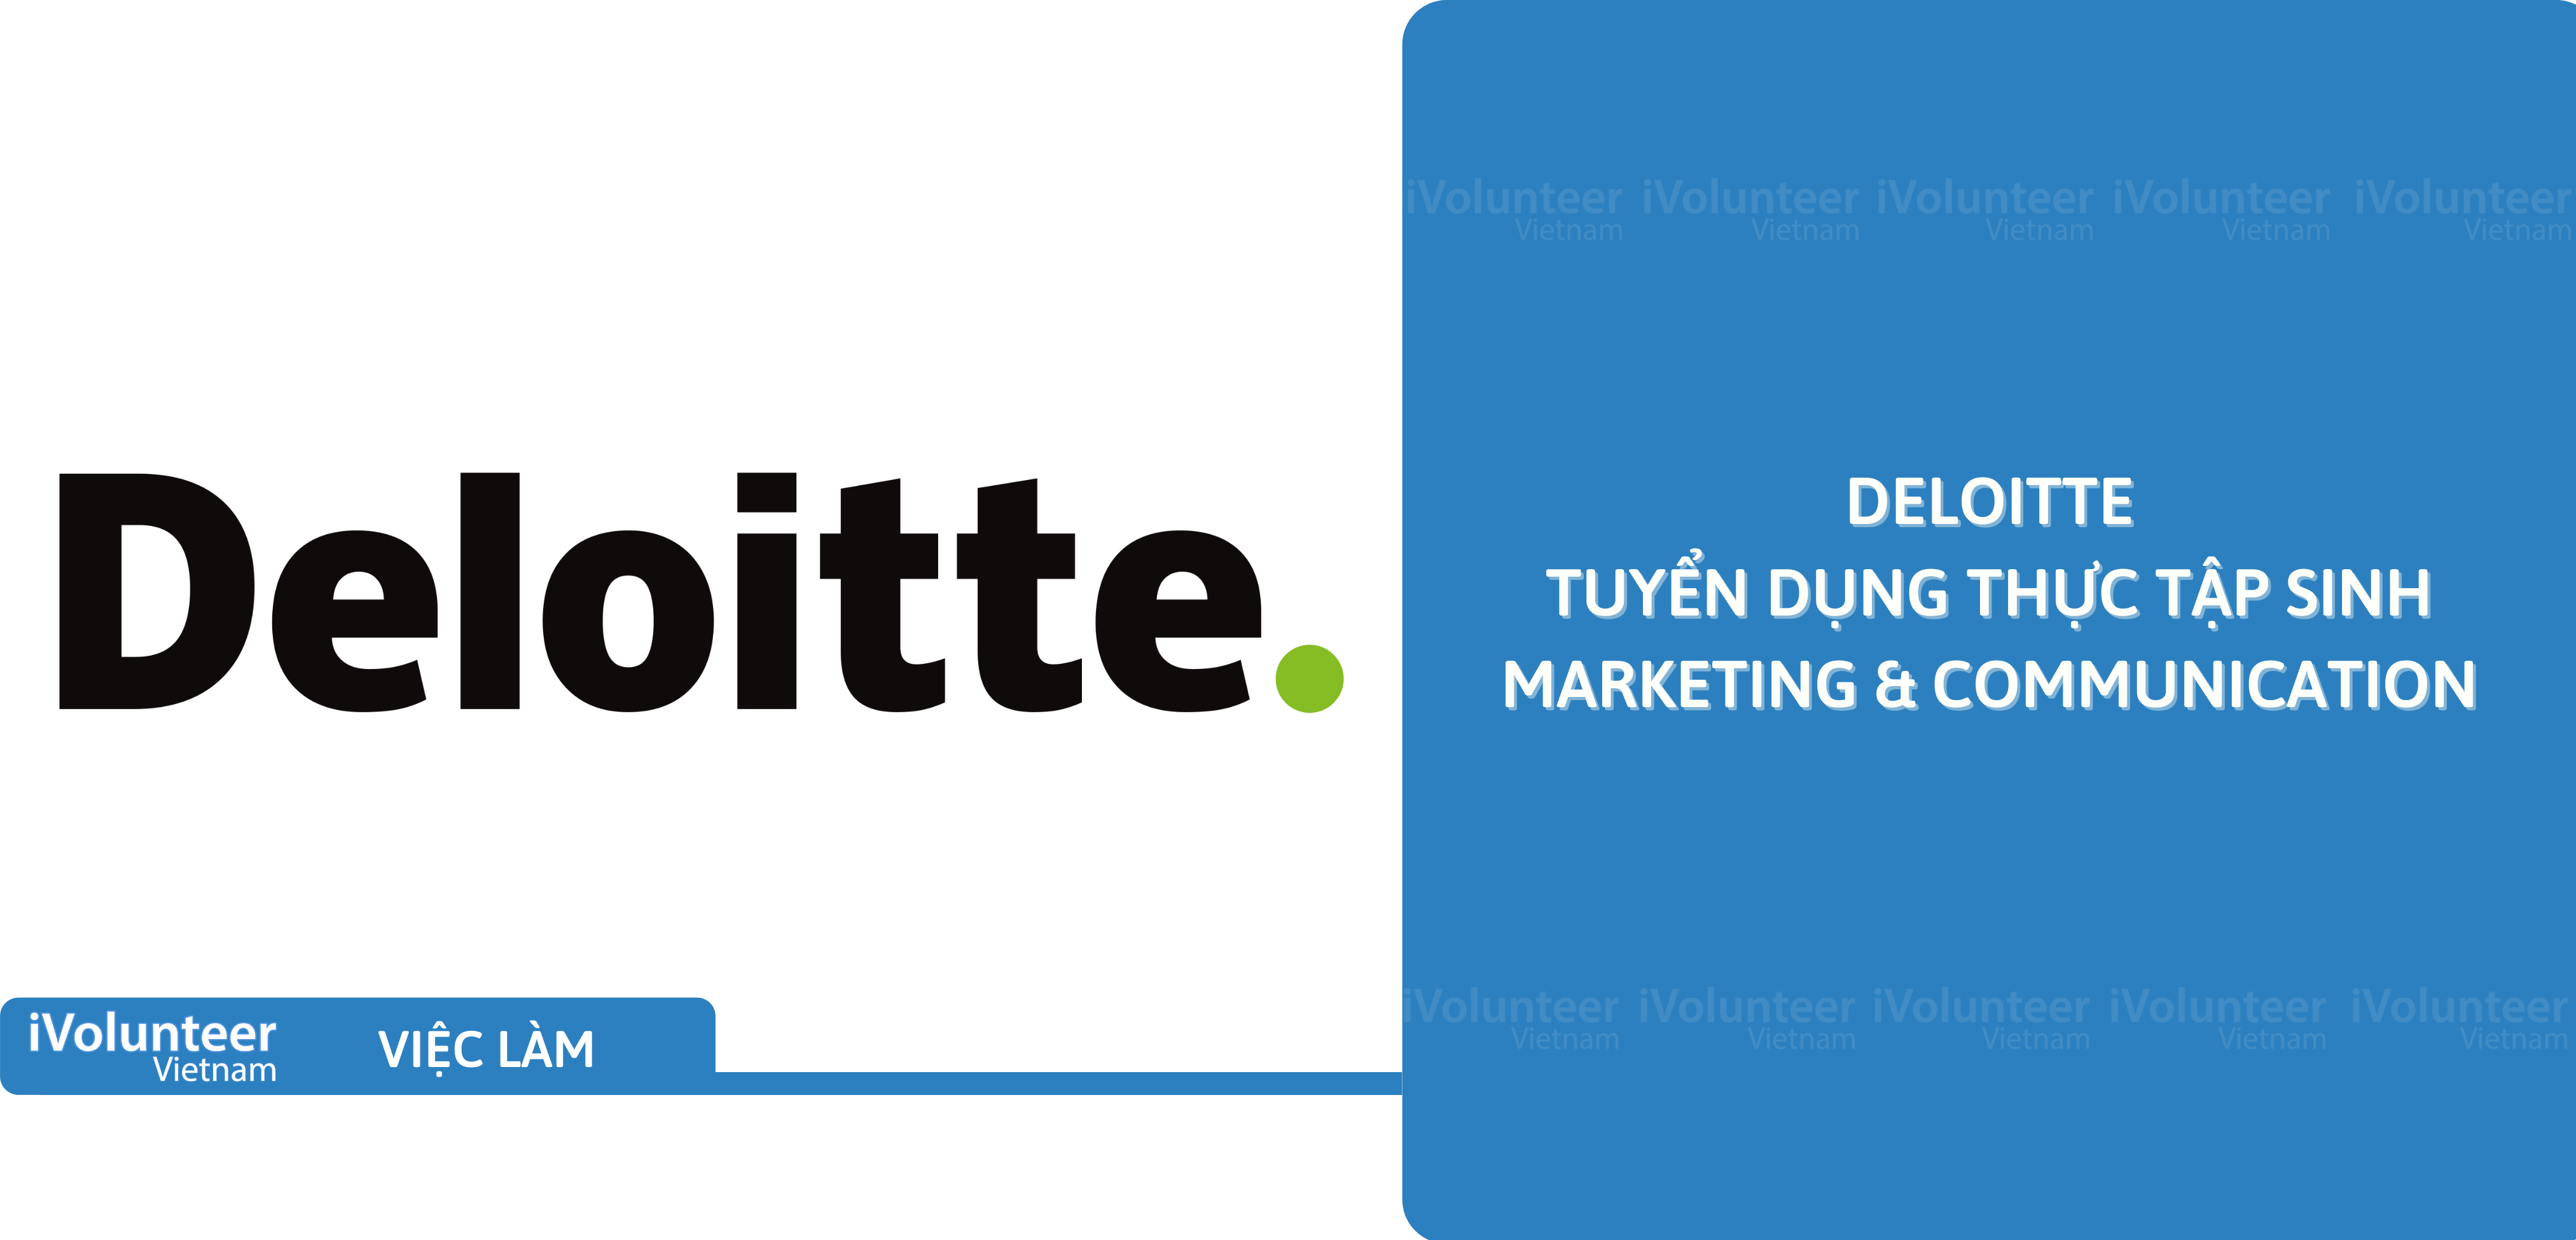 [HN] Deloitte Tuyển Dụng Thực Tập Sinh Marketing & Communication